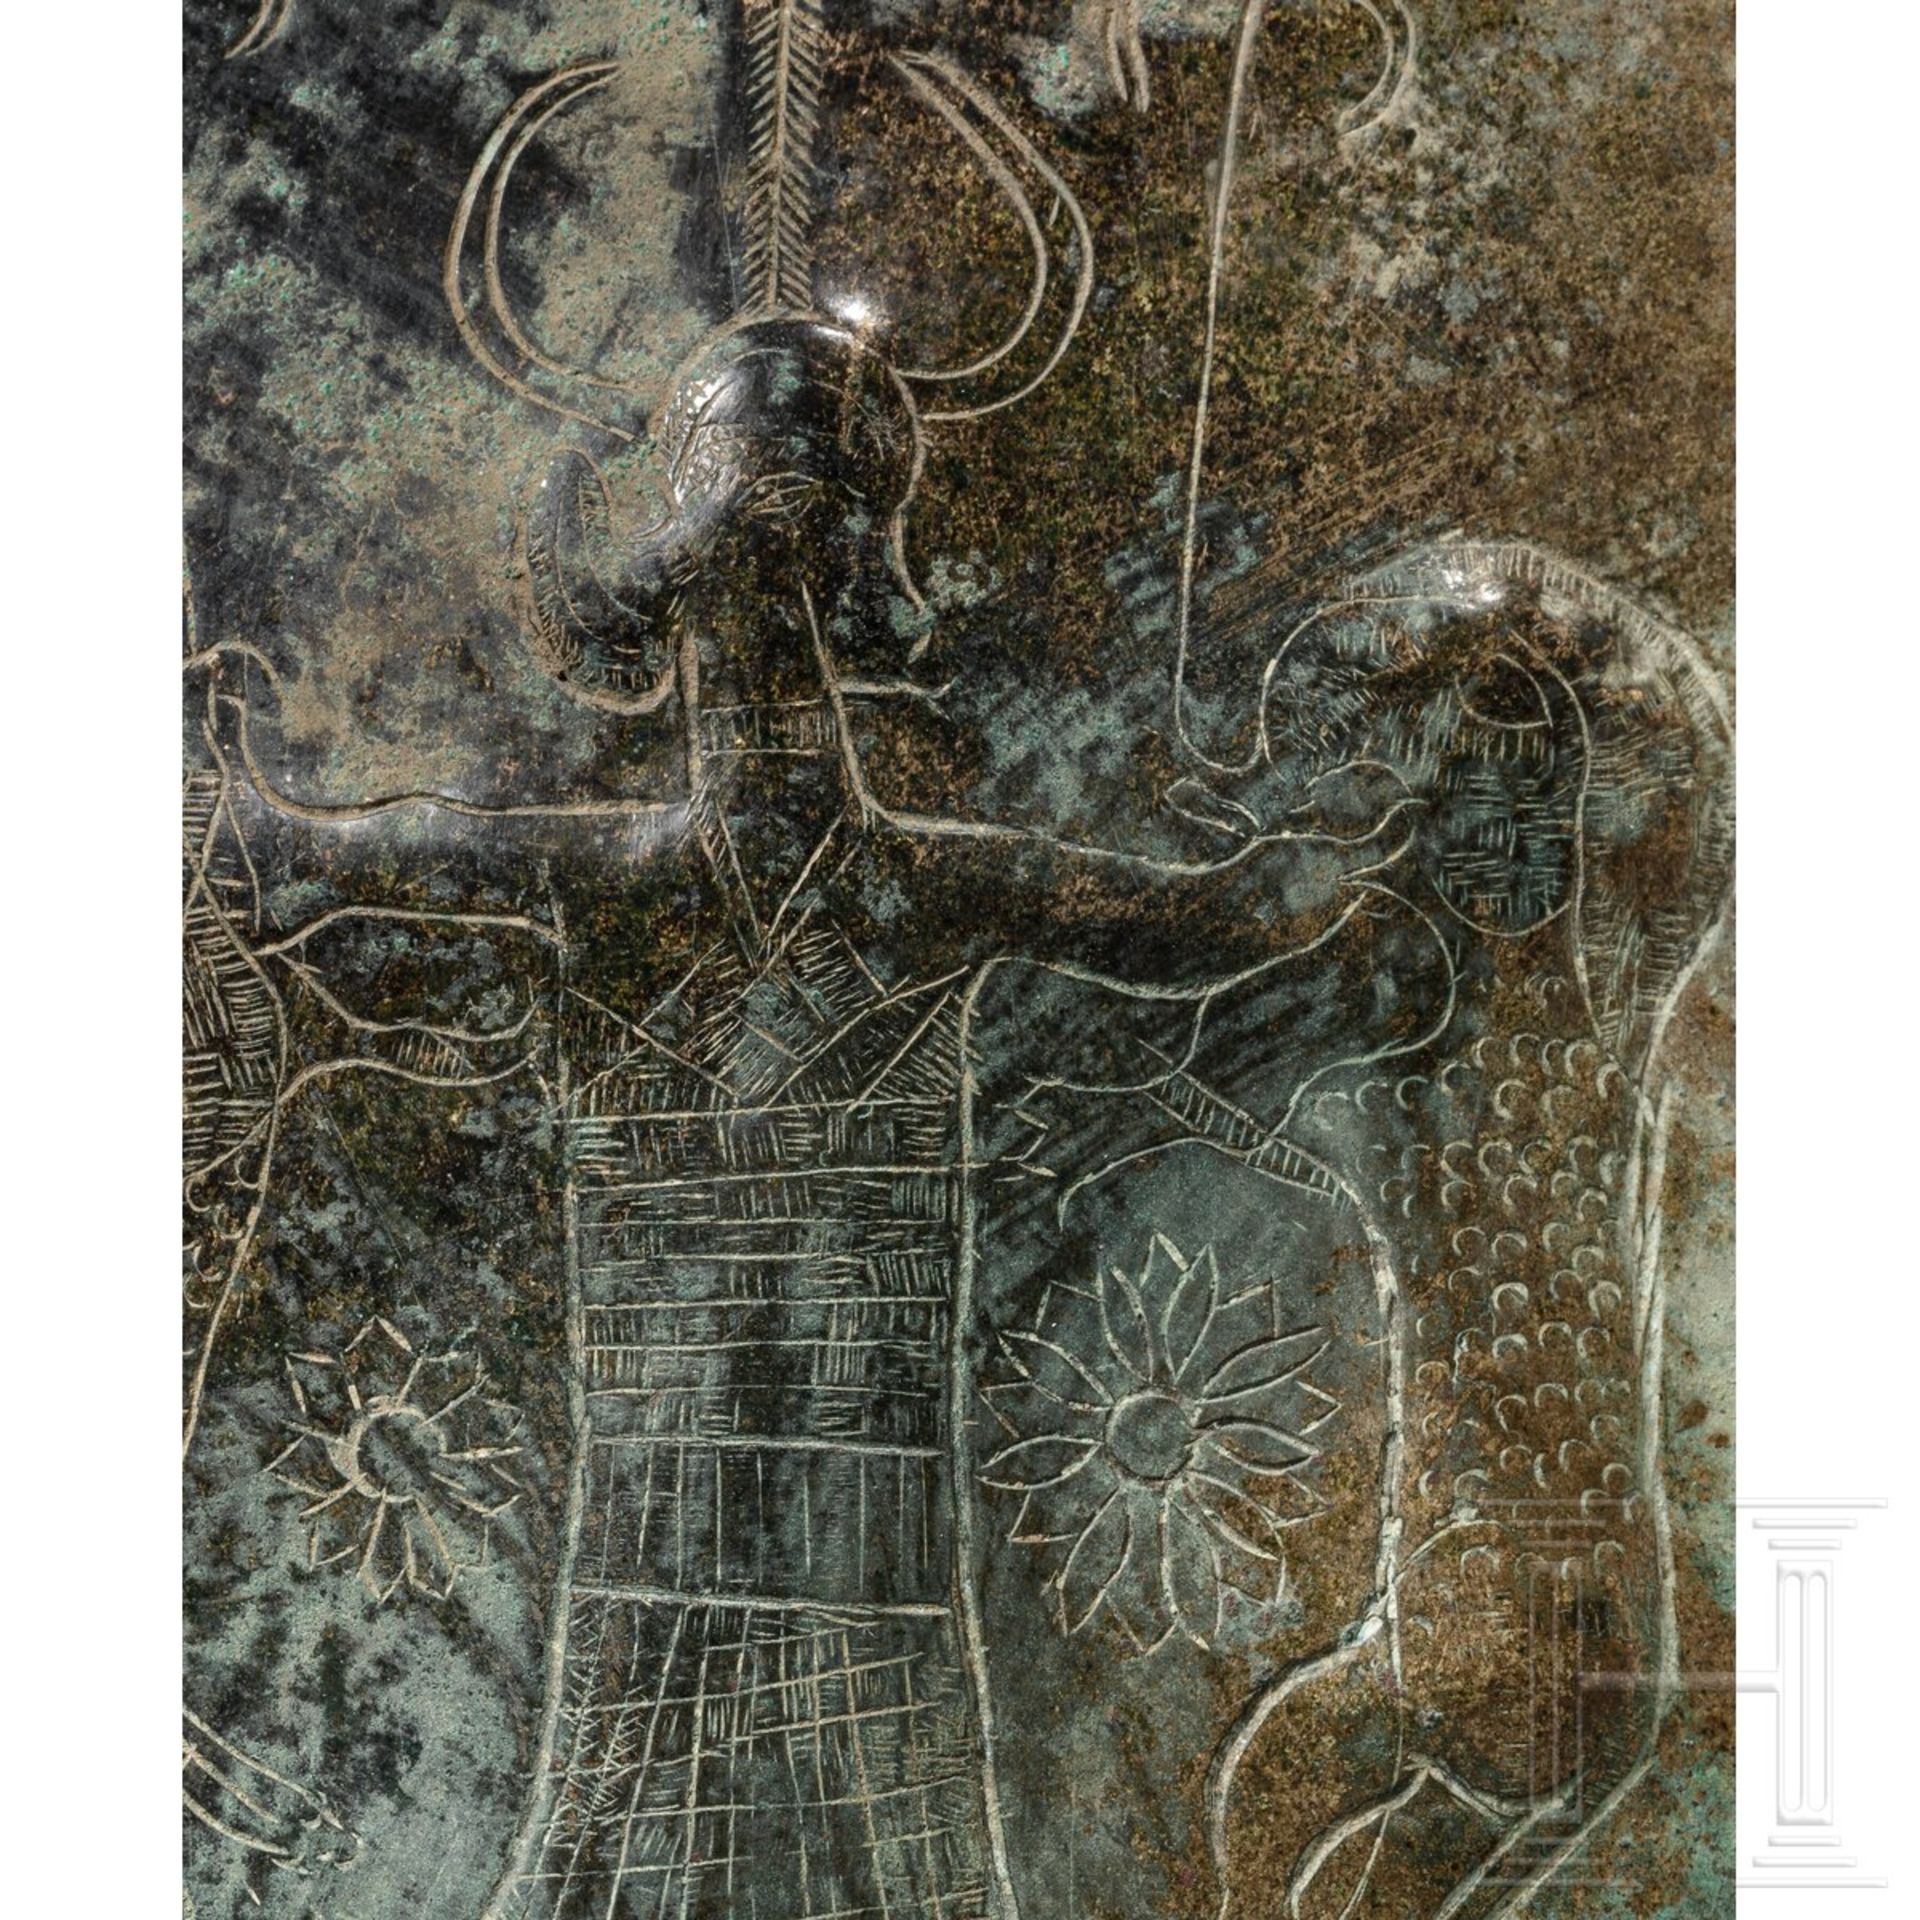 Bronzeblech mit dem "Herrn der Tiere", urartäisch, 9. - 8. Jhdt. v. Chr.  - Bild 3 aus 3